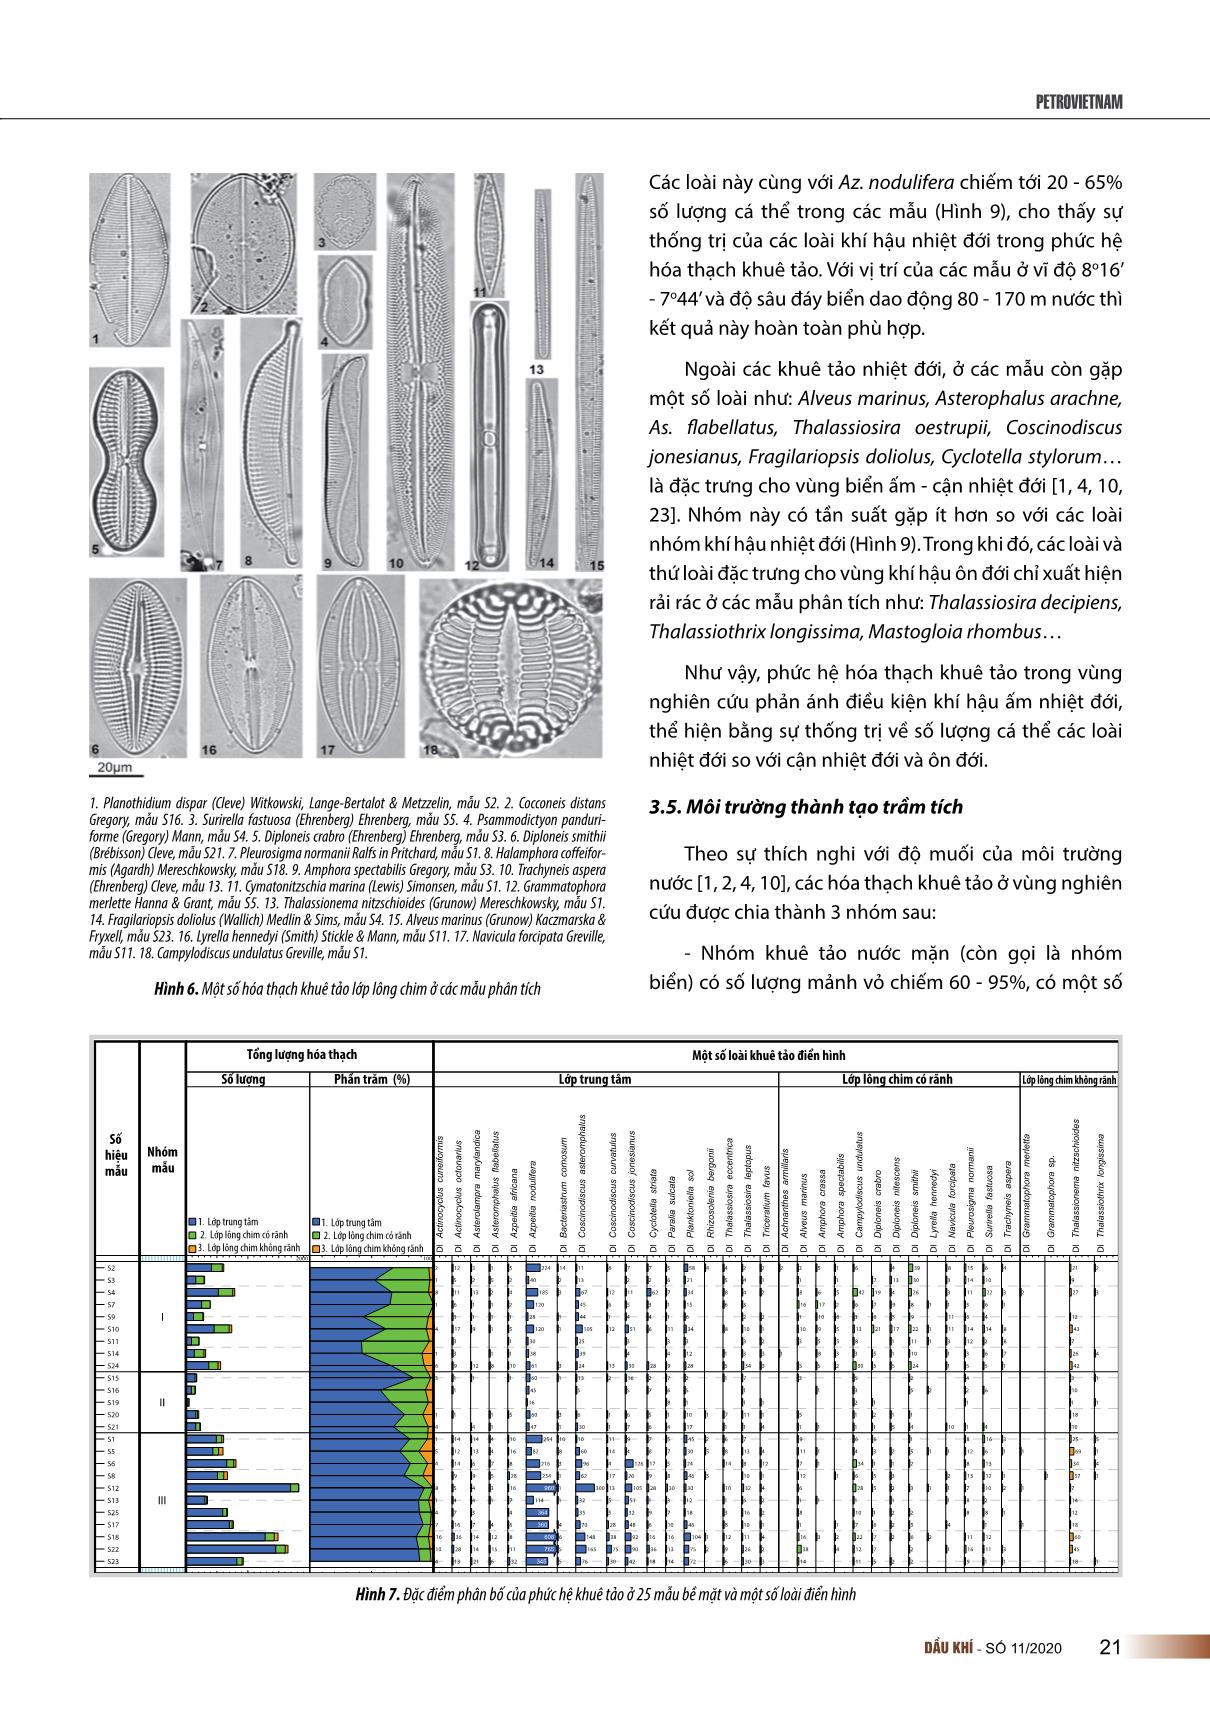 Phức hệ hóa thạch khuê tảo trong các trầm tích bề mặt đáy biển ở khu vực Đông Nam bể Nam Côn Sơn trang 5